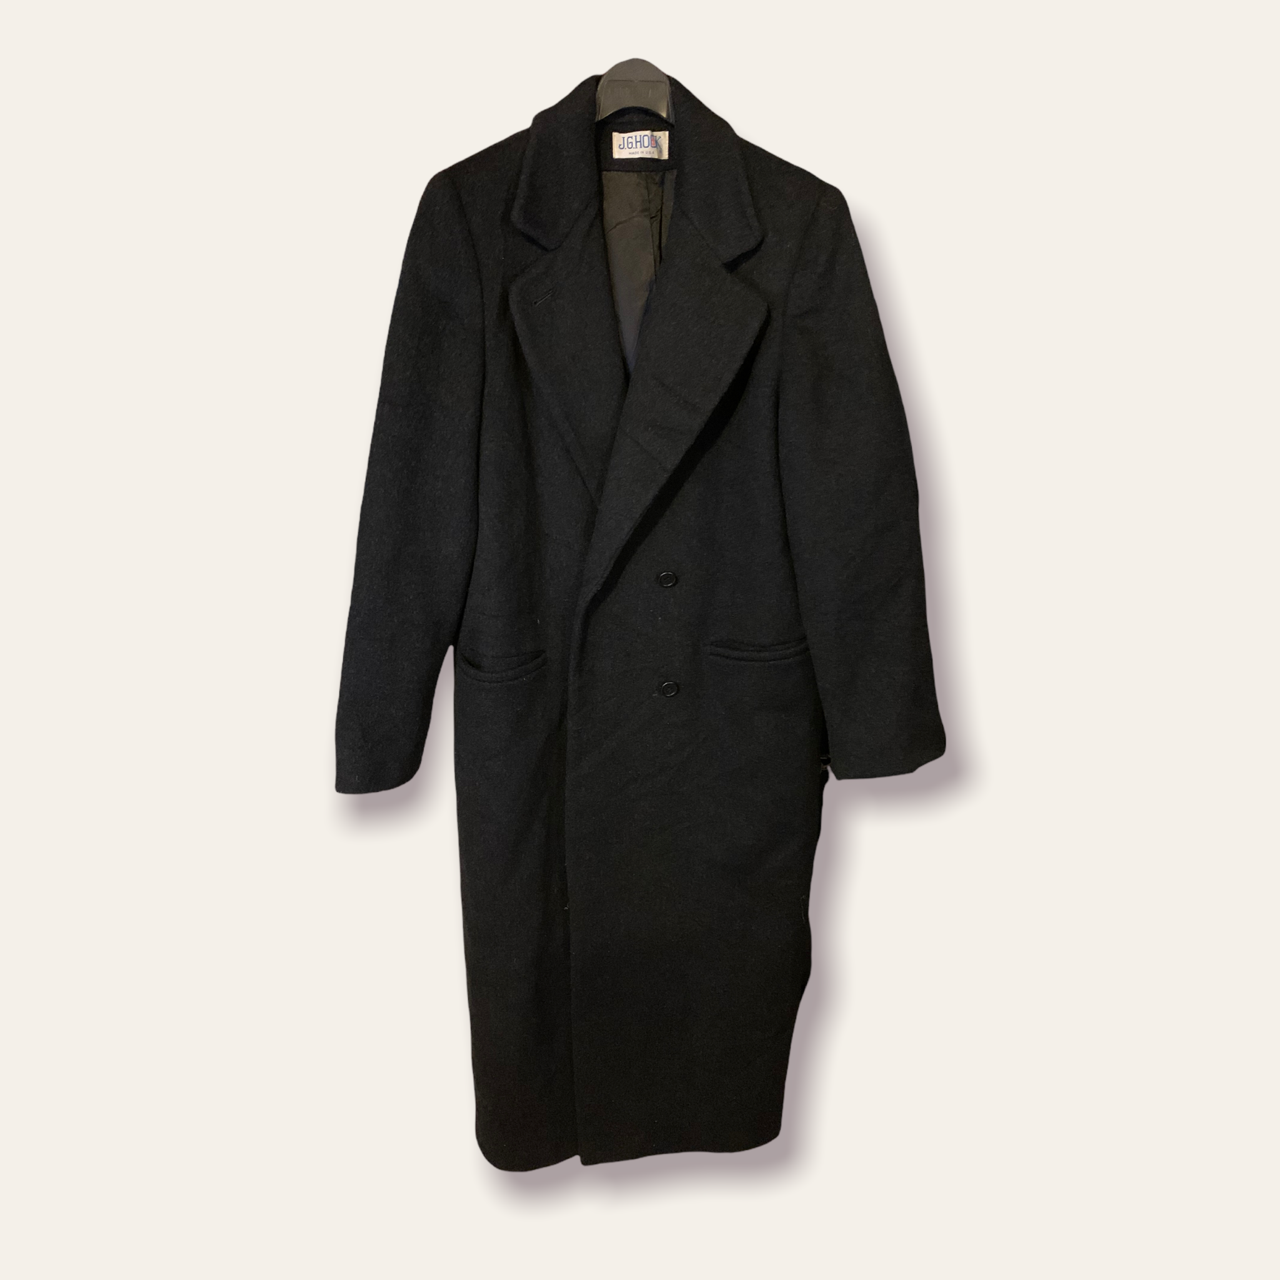 Celo Suburbio cabina Abrigo de lana hombre color negro largo - Glow Fashion